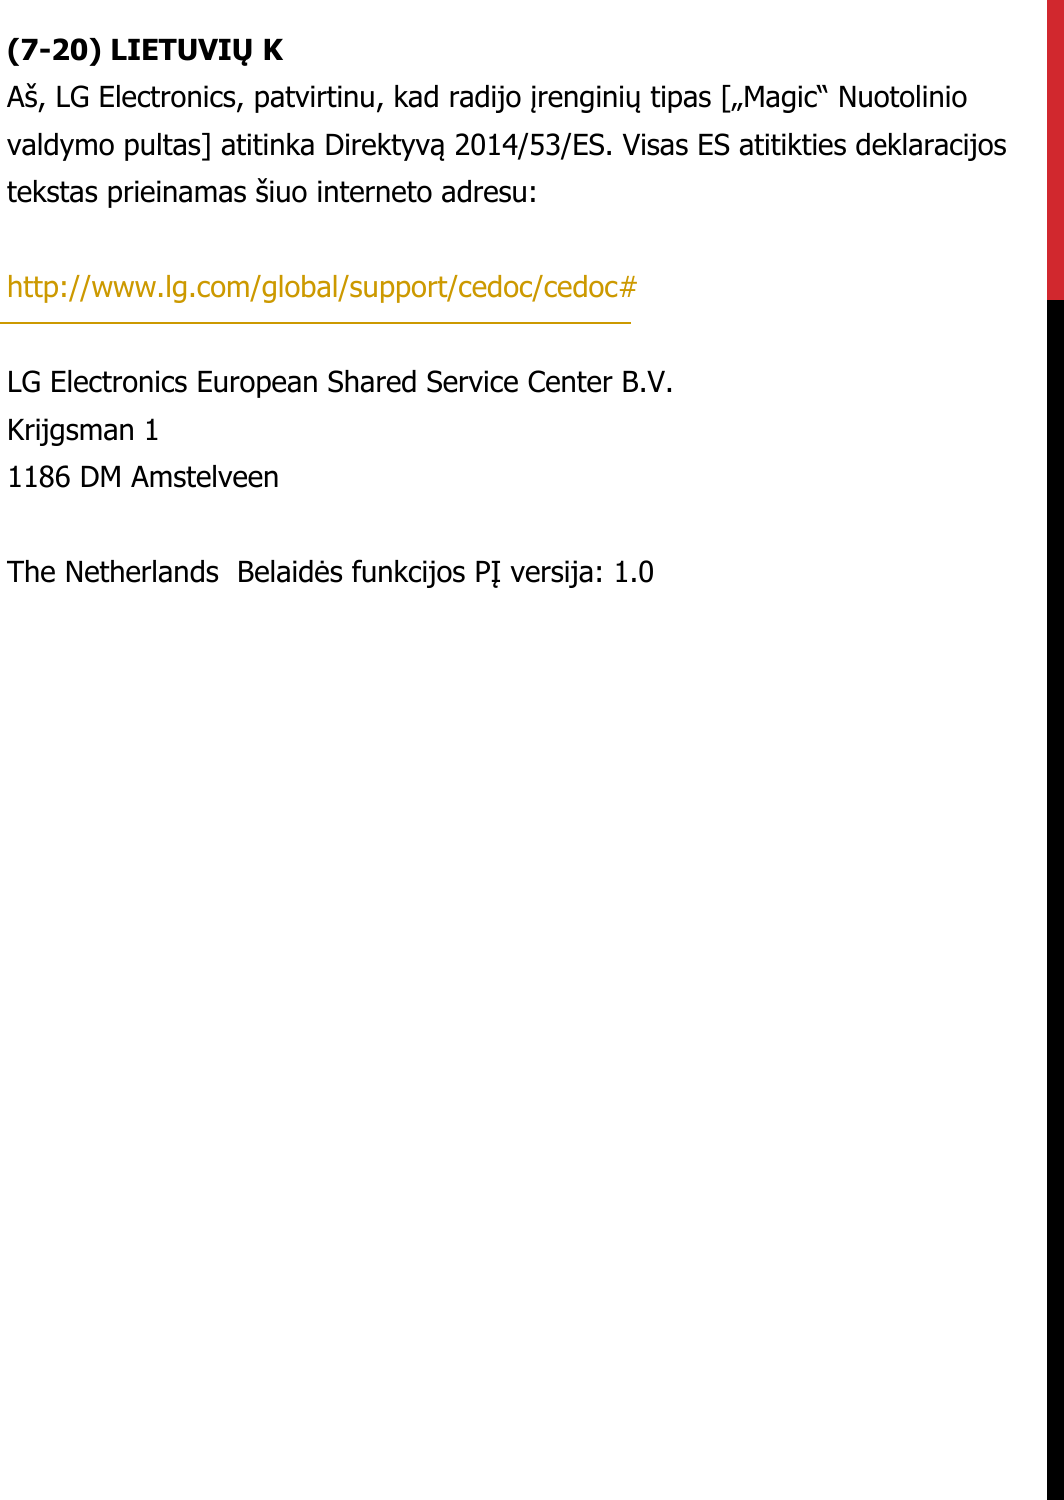 (7-20) LIETUVIŲ KAš, LG Electronics, patvirtinu, kad radijo įrenginių tipas [„Magic“ Nuotolinio valdymo pultas] atitinka Direktyvą 2014/53/ES. Visas ES atitikties deklaracijos tekstas prieinamas šiuo interneto adresu:   http://www.lg.com/global/support/cedoc/cedoc#   LG Electronics European Shared Service Center B.V.  Krijgsman 1  1186 DM Amstelveen   The Netherlands  Belaidės funkcijos PĮ versija: 1.0